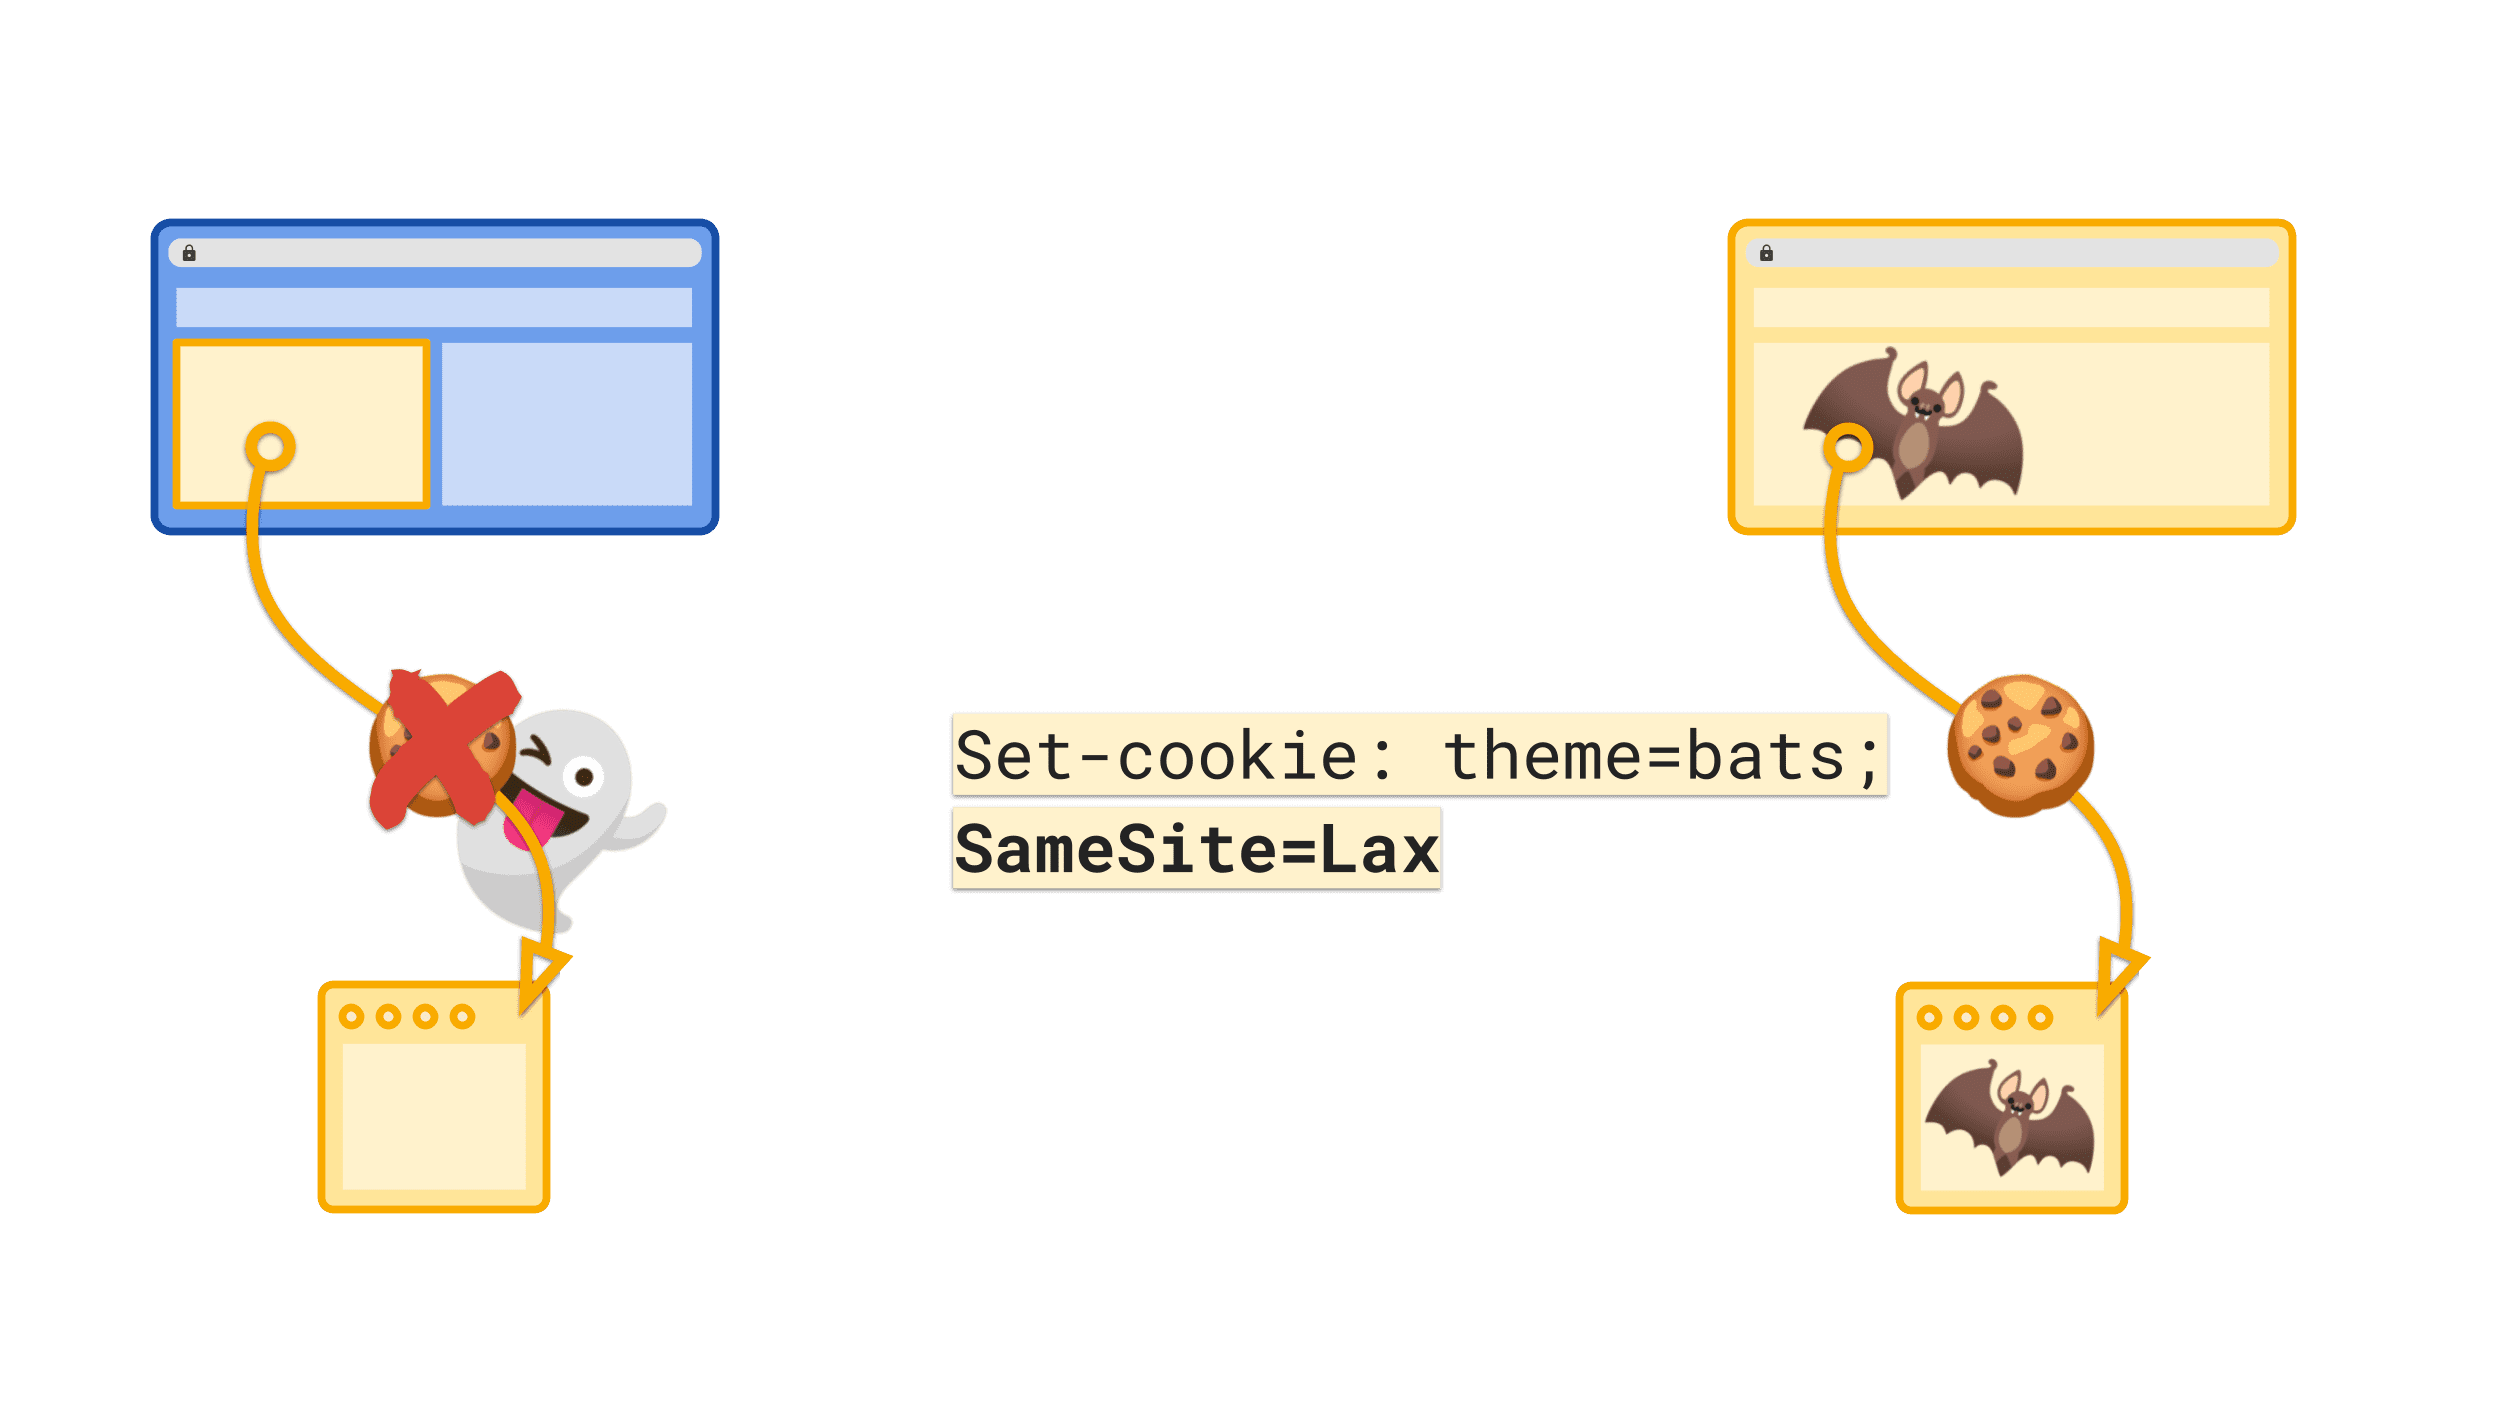 ערך ברירת המחדל SameSite=Lax מונע שליחה של קובץ cookie בהקשר של צד שלישי